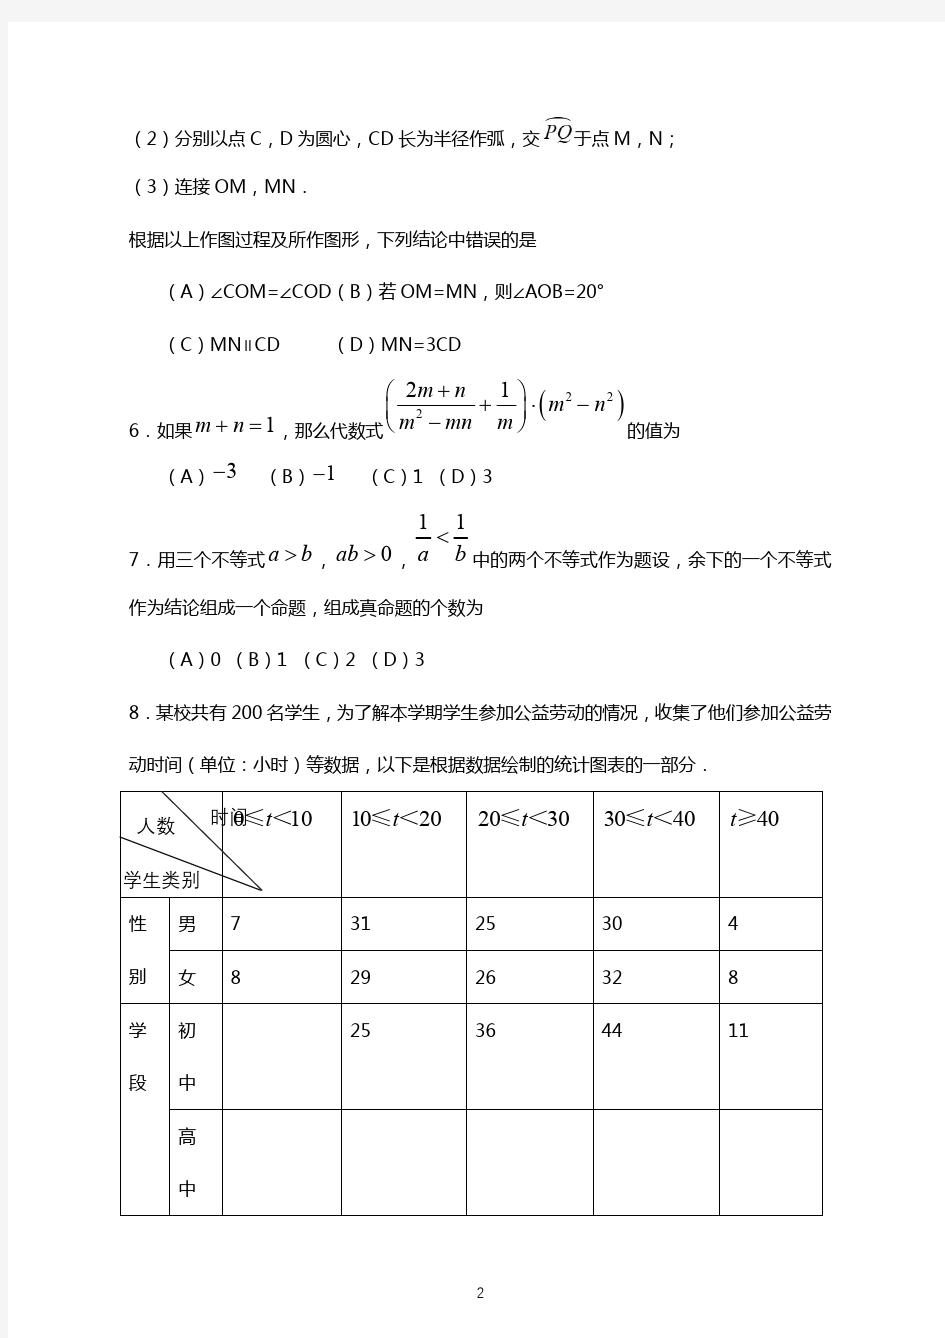 (精校版)2019年北京中考数学真题试卷及答案